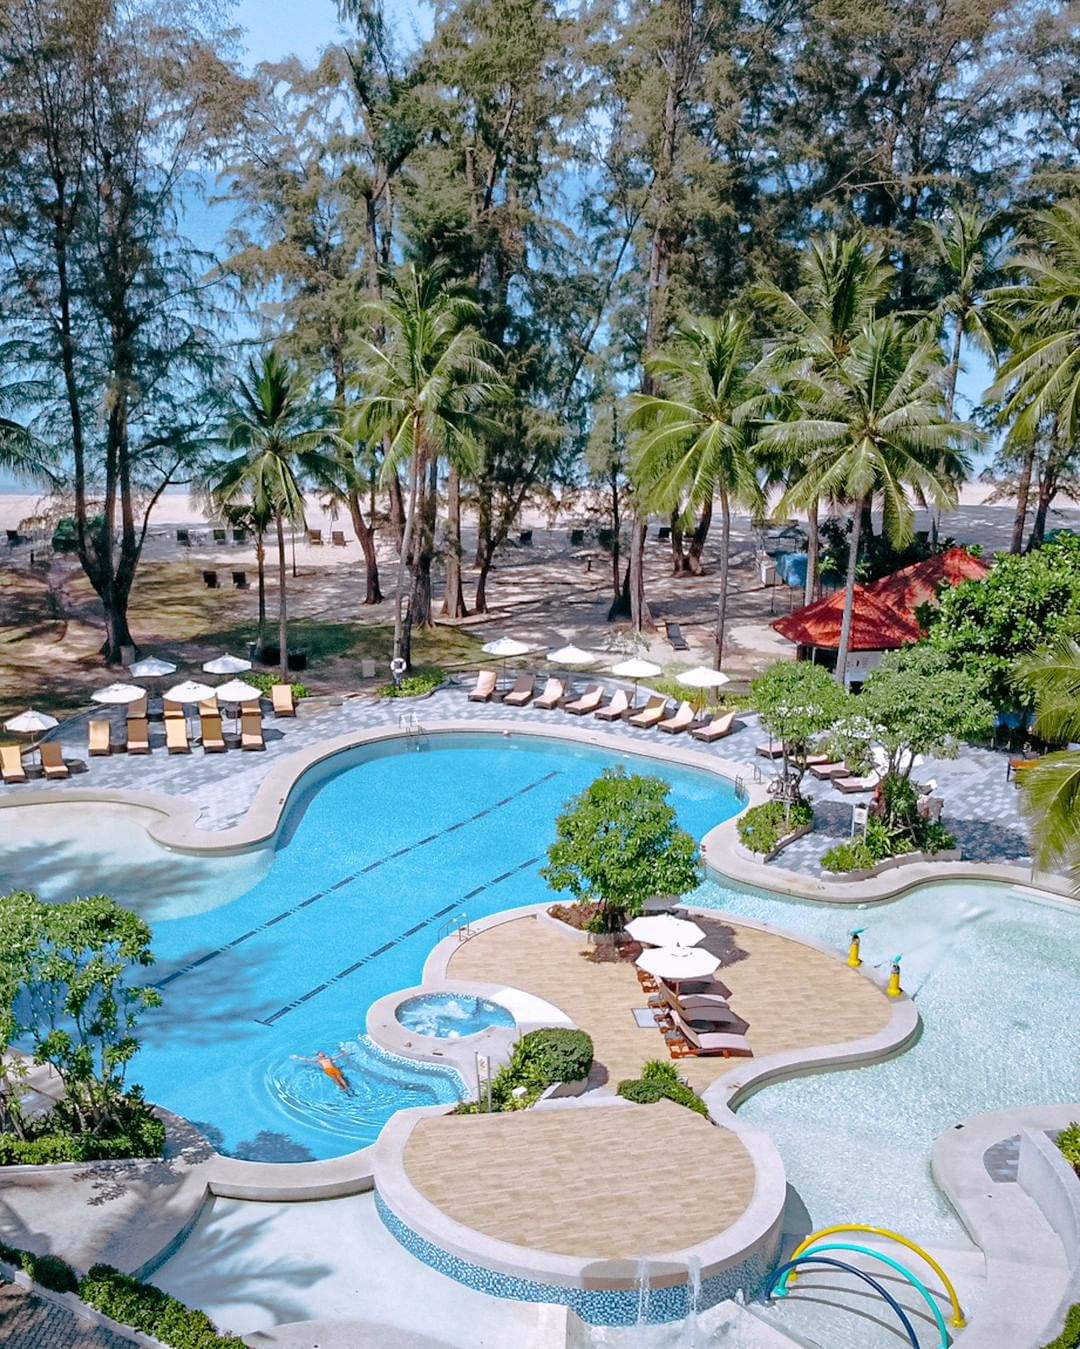 luxury hotels near singapore - Dusit Thani Laguna Phuket